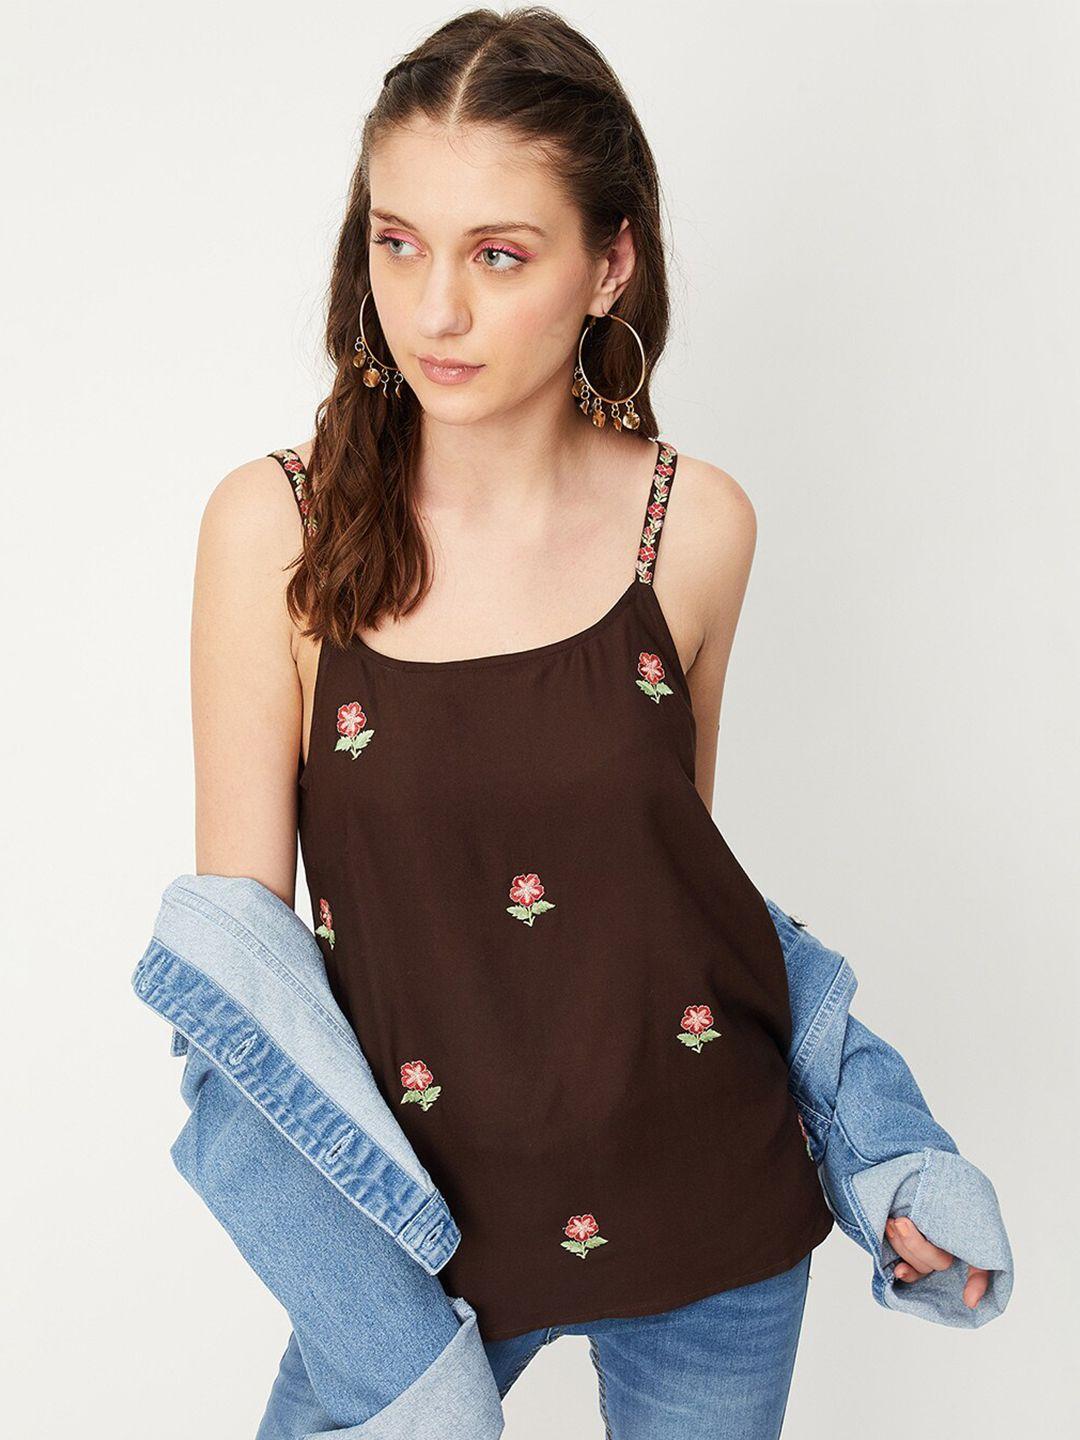 max shoulder straps floral embroidered top